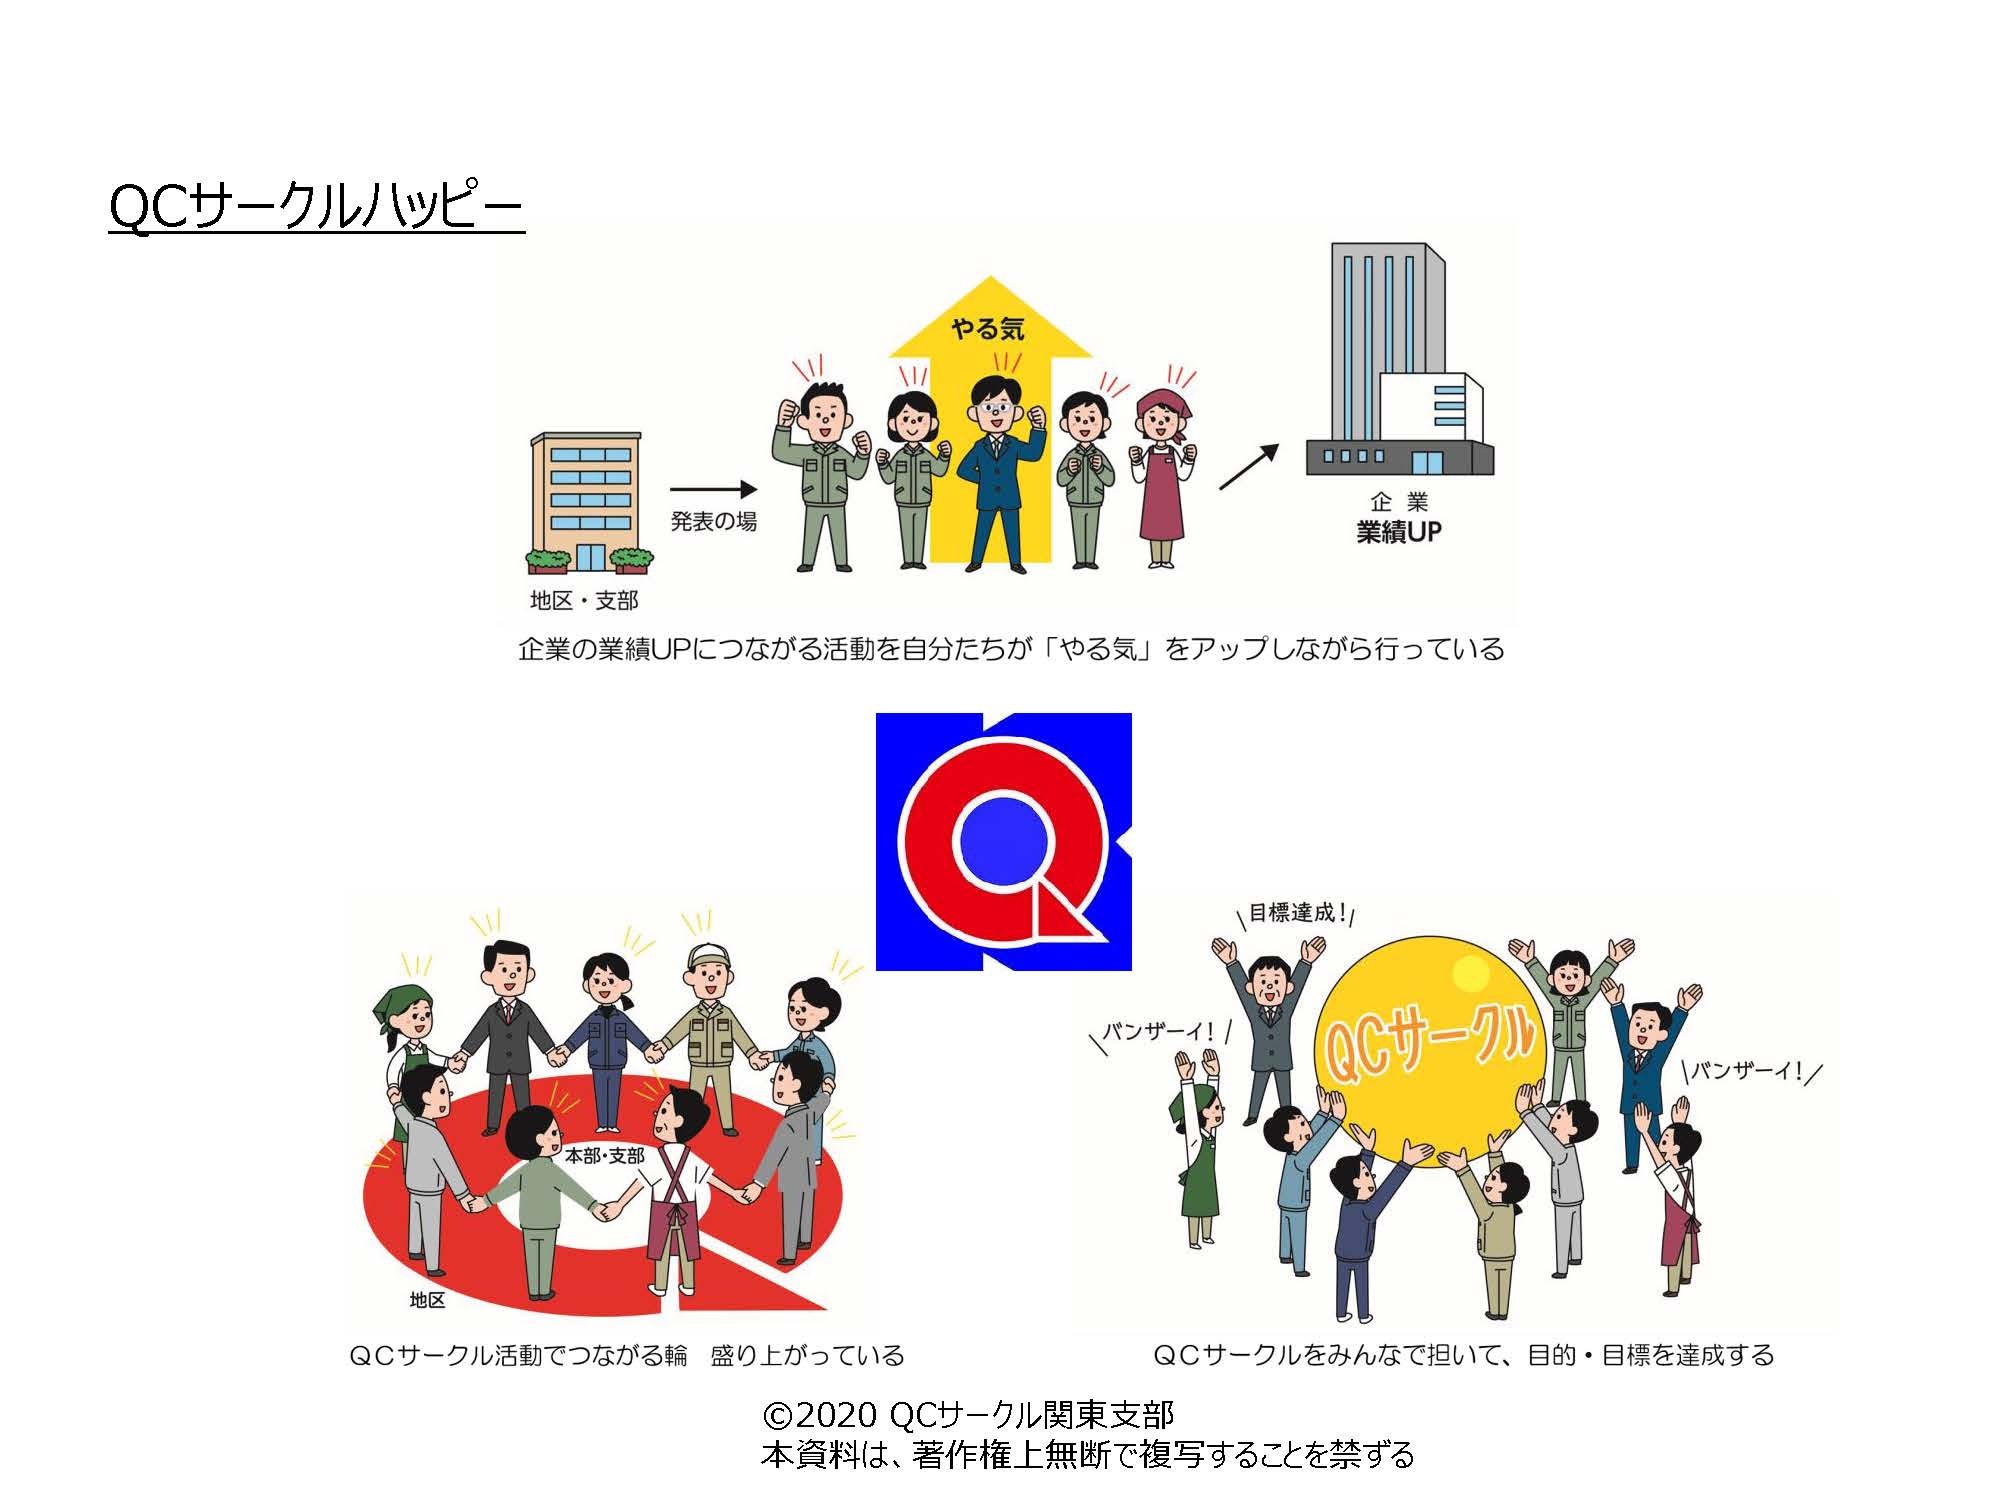 活動方針 関東支部 日本科学技術連盟qcサークル